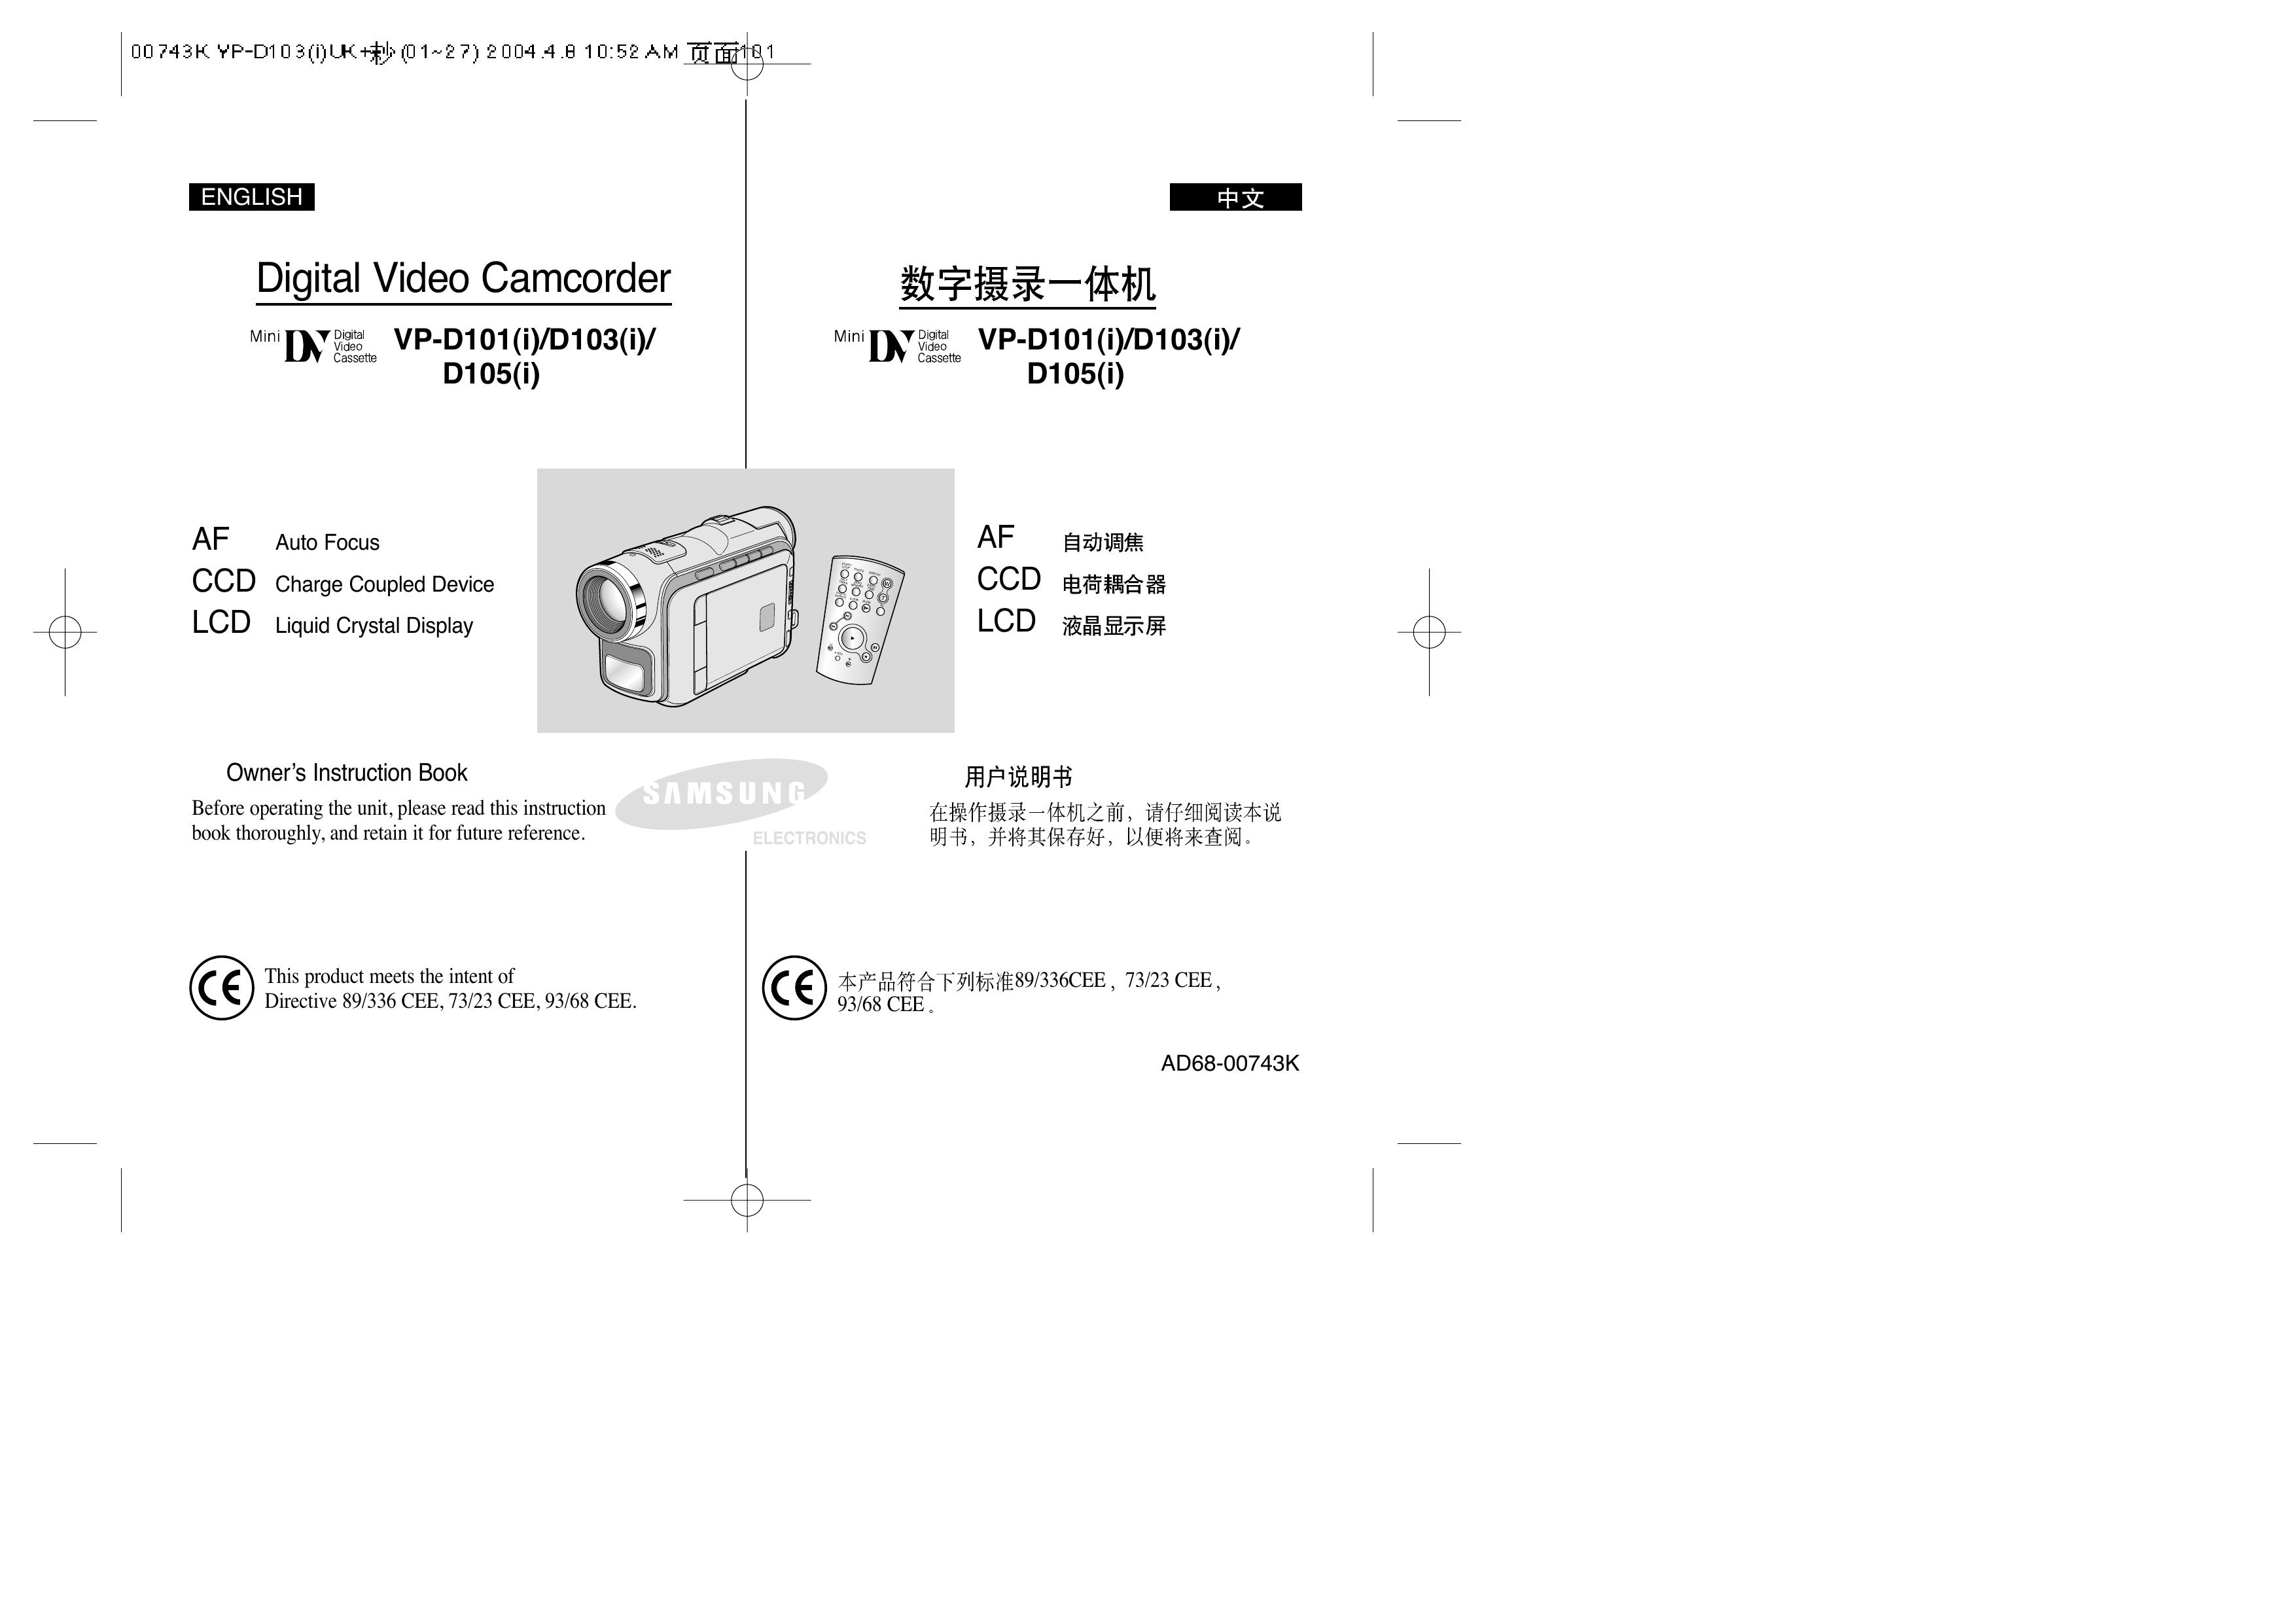 Samsung D103(i) Camcorder User Manual